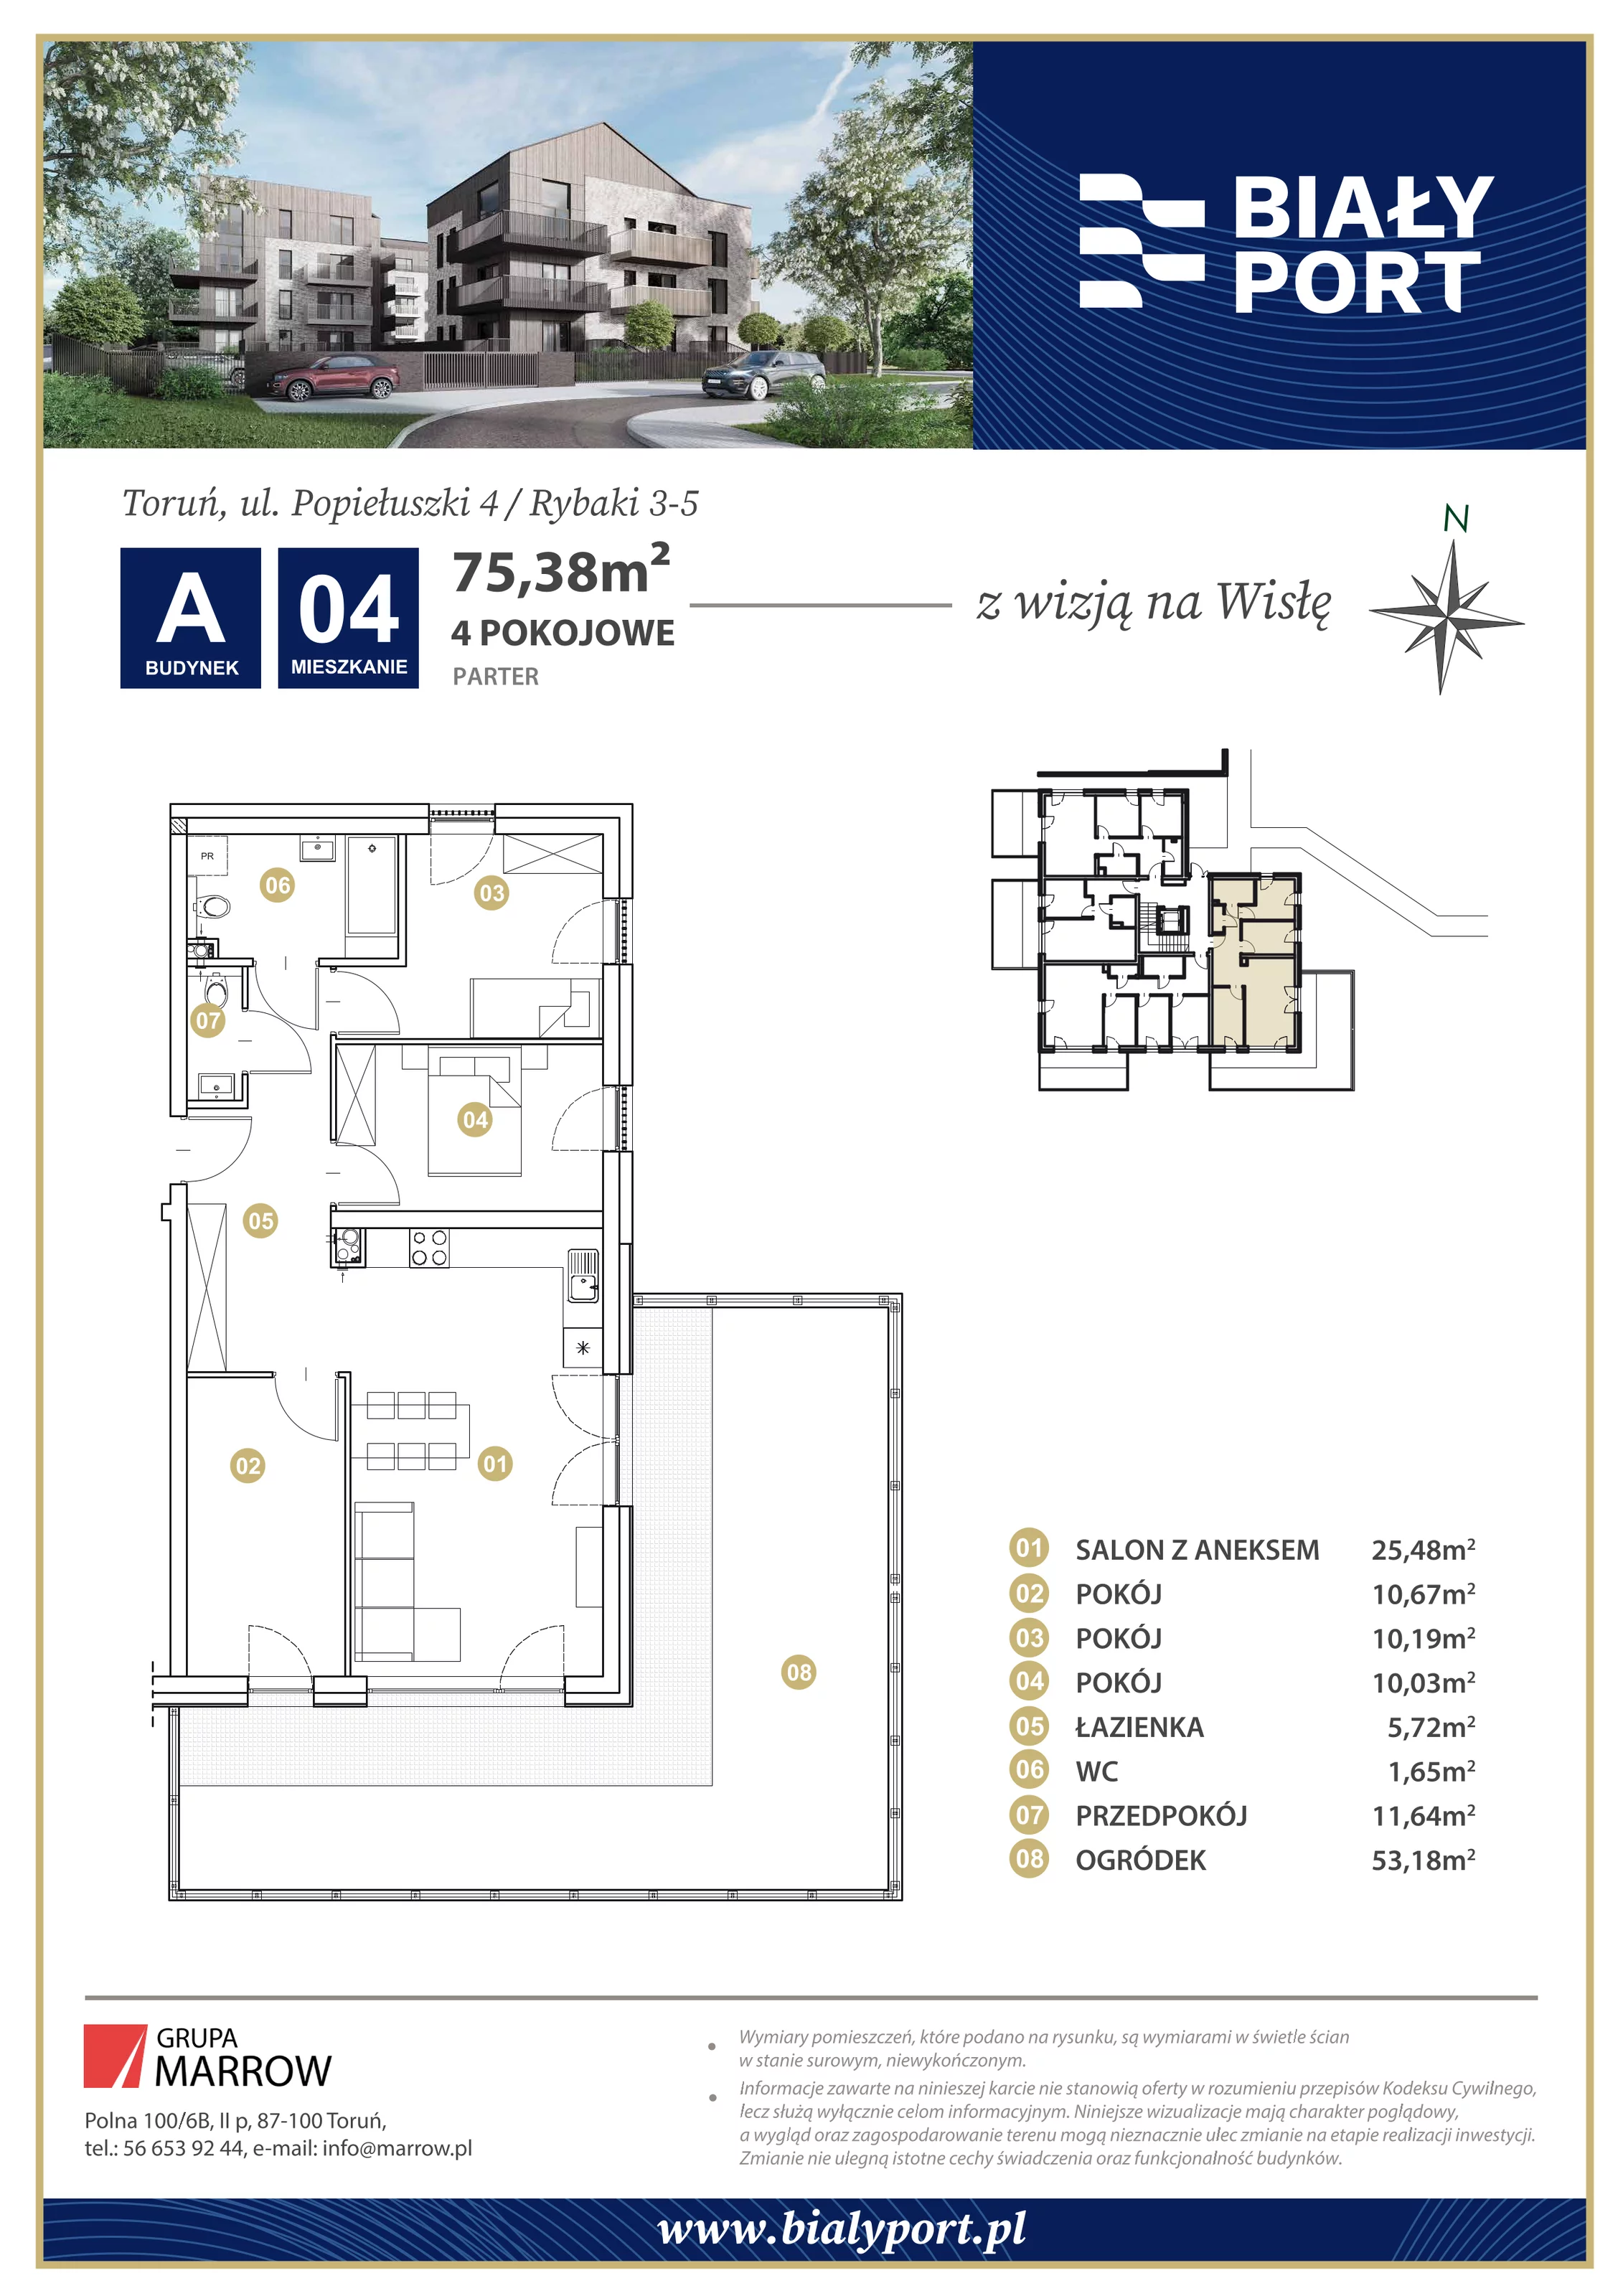 Mieszkanie 75,38 m², parter, oferta nr 4, Biały Port, Toruń, Rybaki, ul. Popiełuszki 4